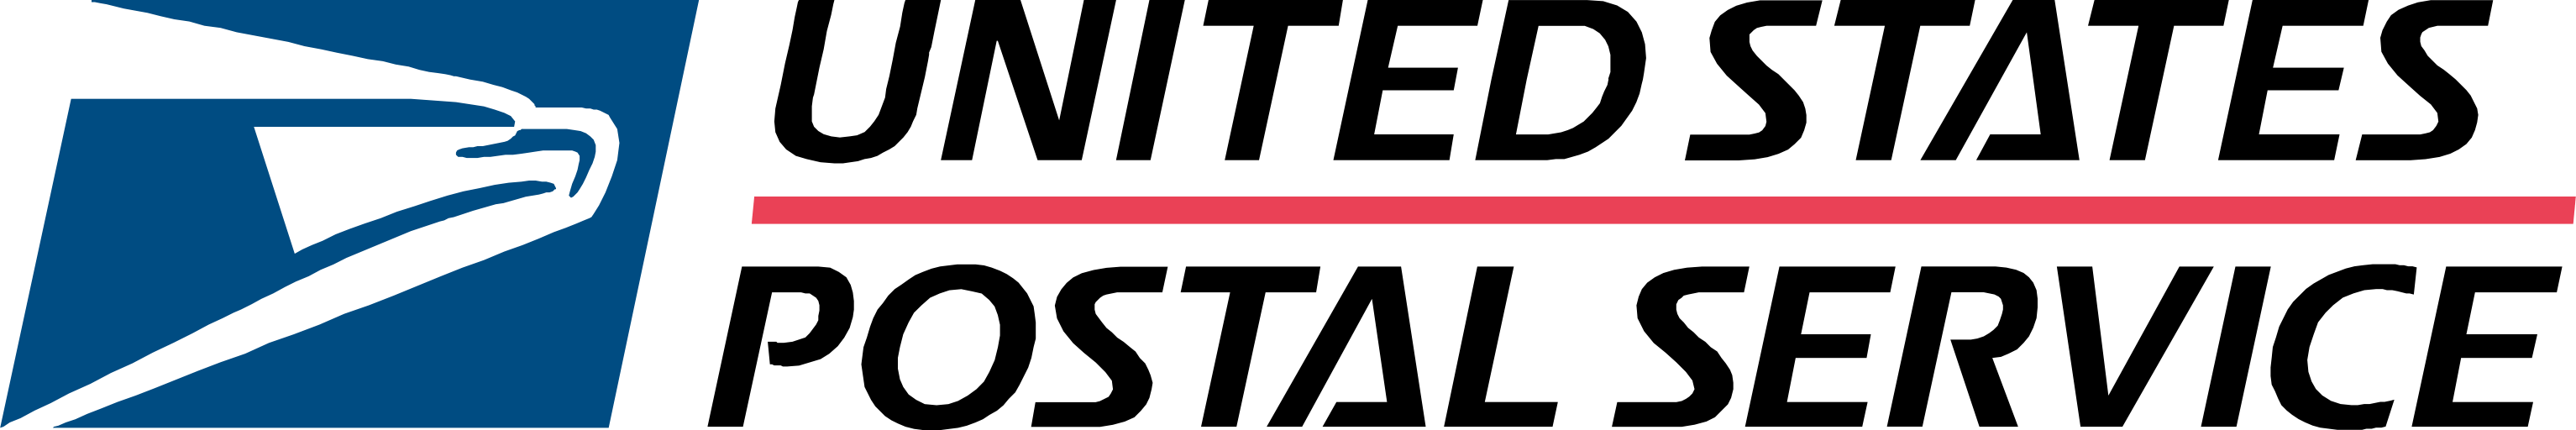 United States Postal Services USPS Logo transparent PNG.